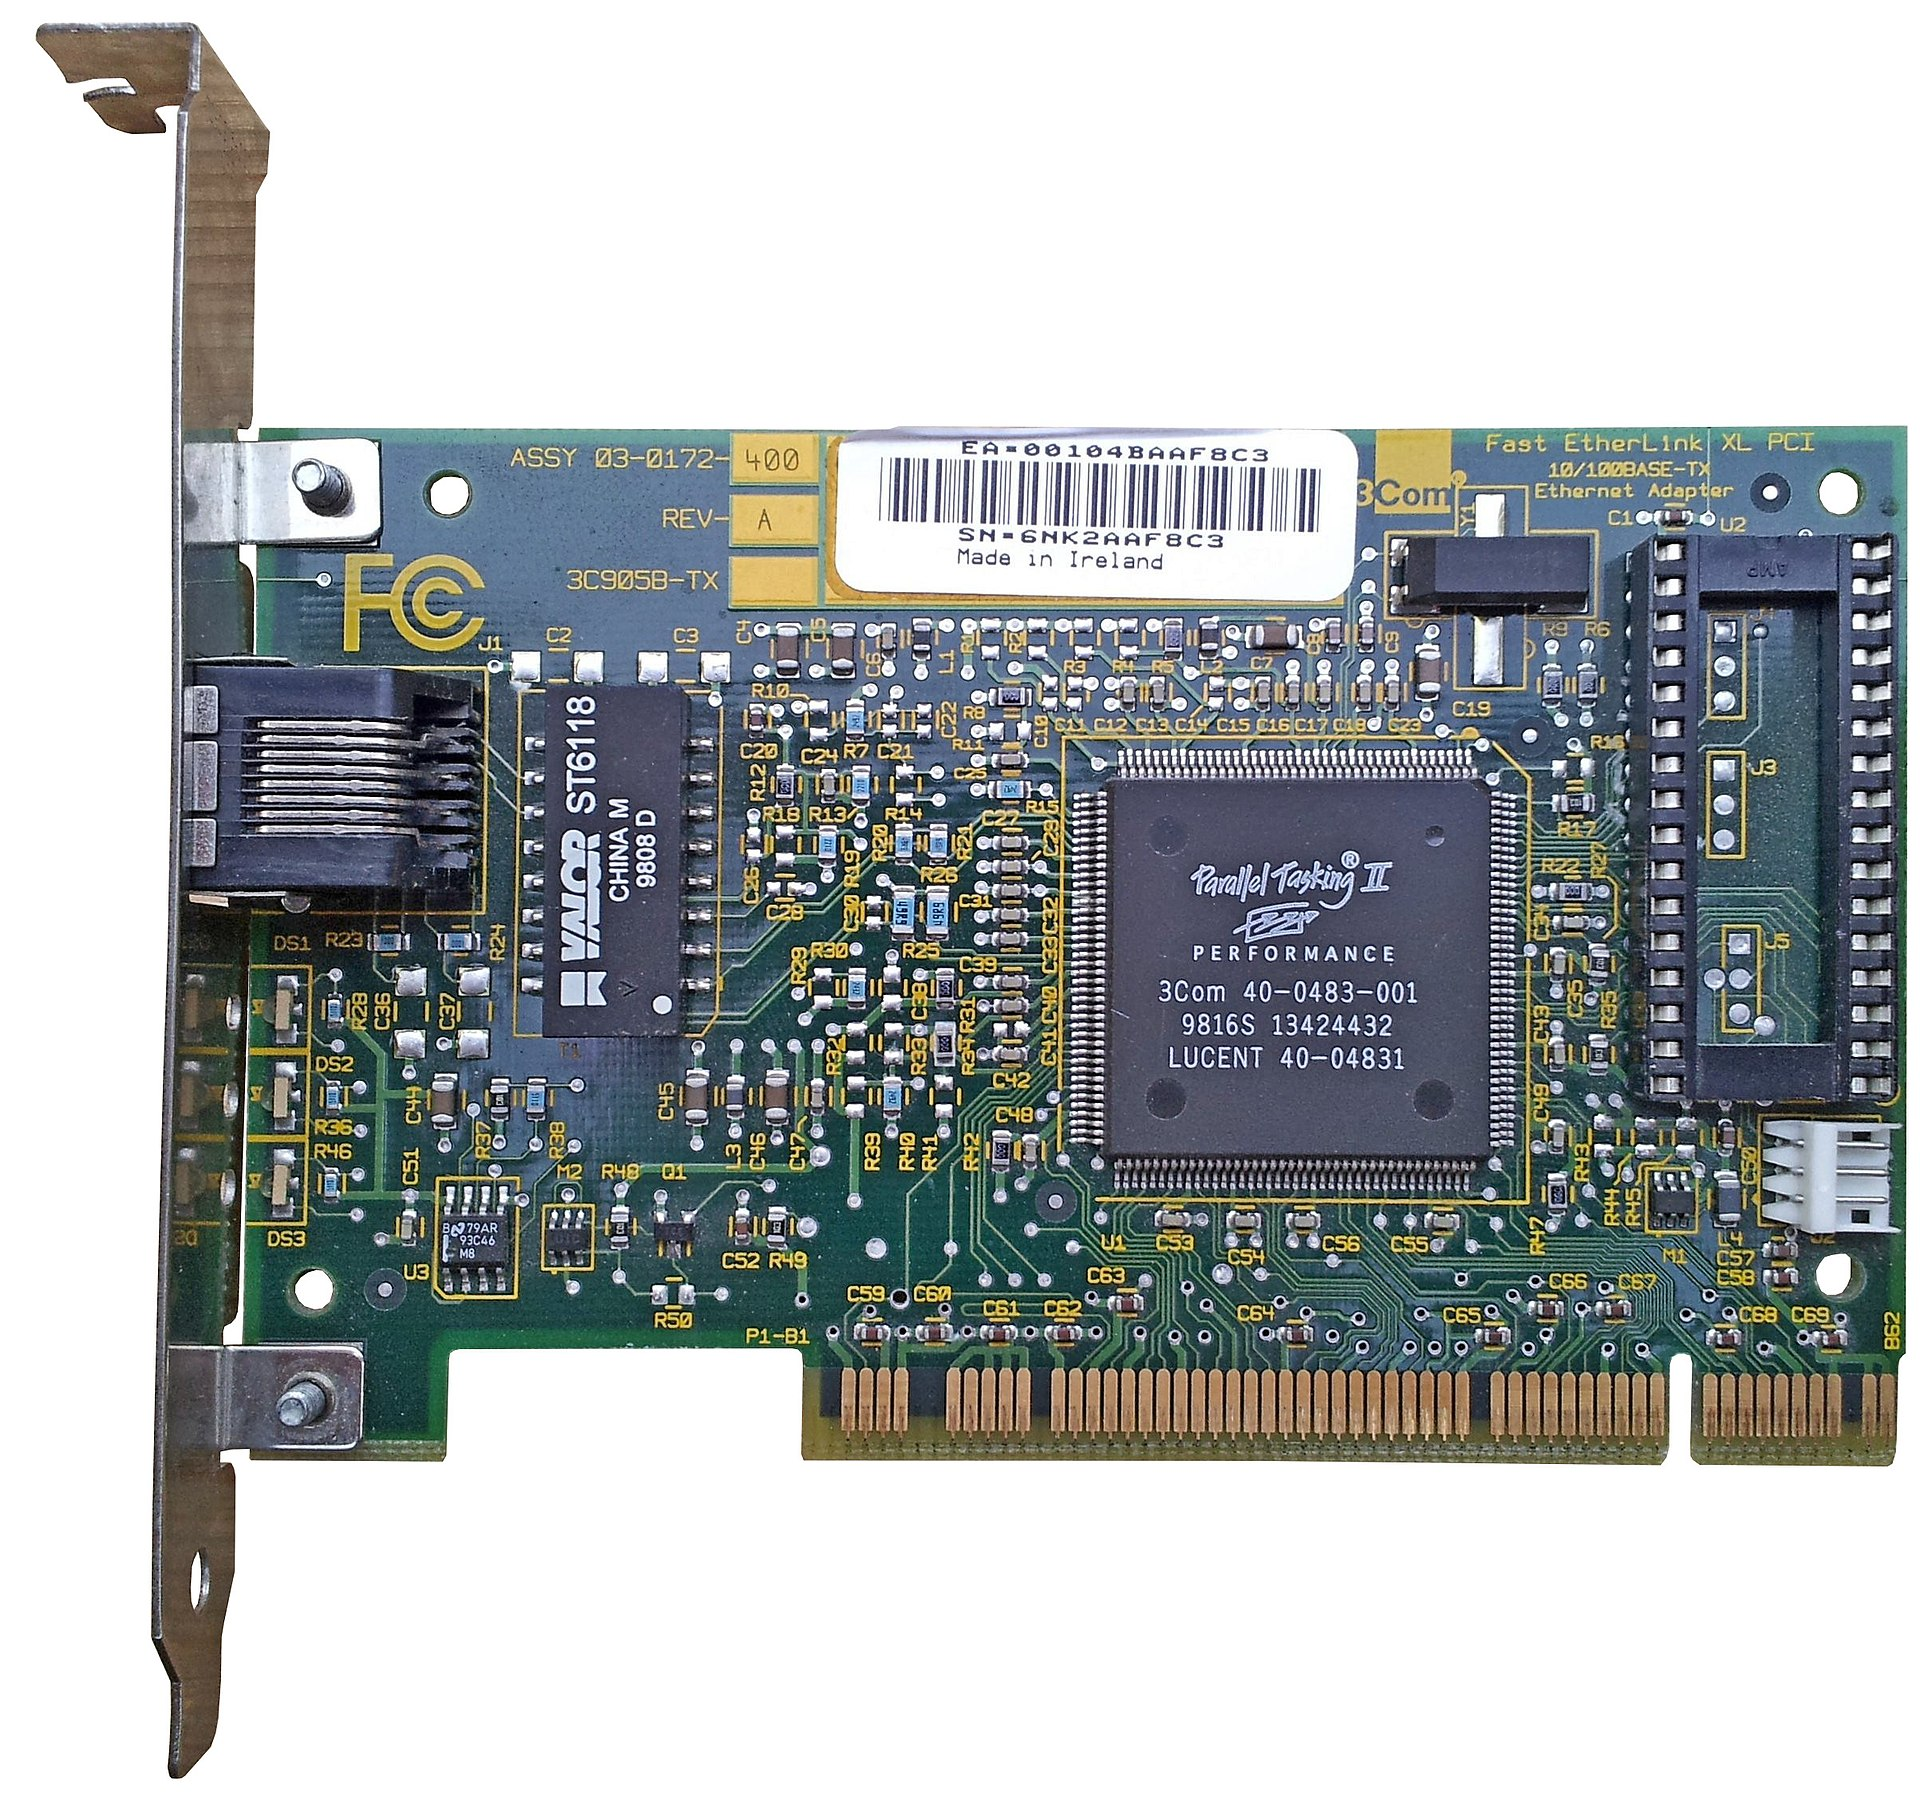 照片中提到了Fast EtherLink XL PCI、10/100BASE-TX、Ethernet Adapter，包含了10兆以太網、顯卡、網絡接口控制器、電腦硬件、乙太網路